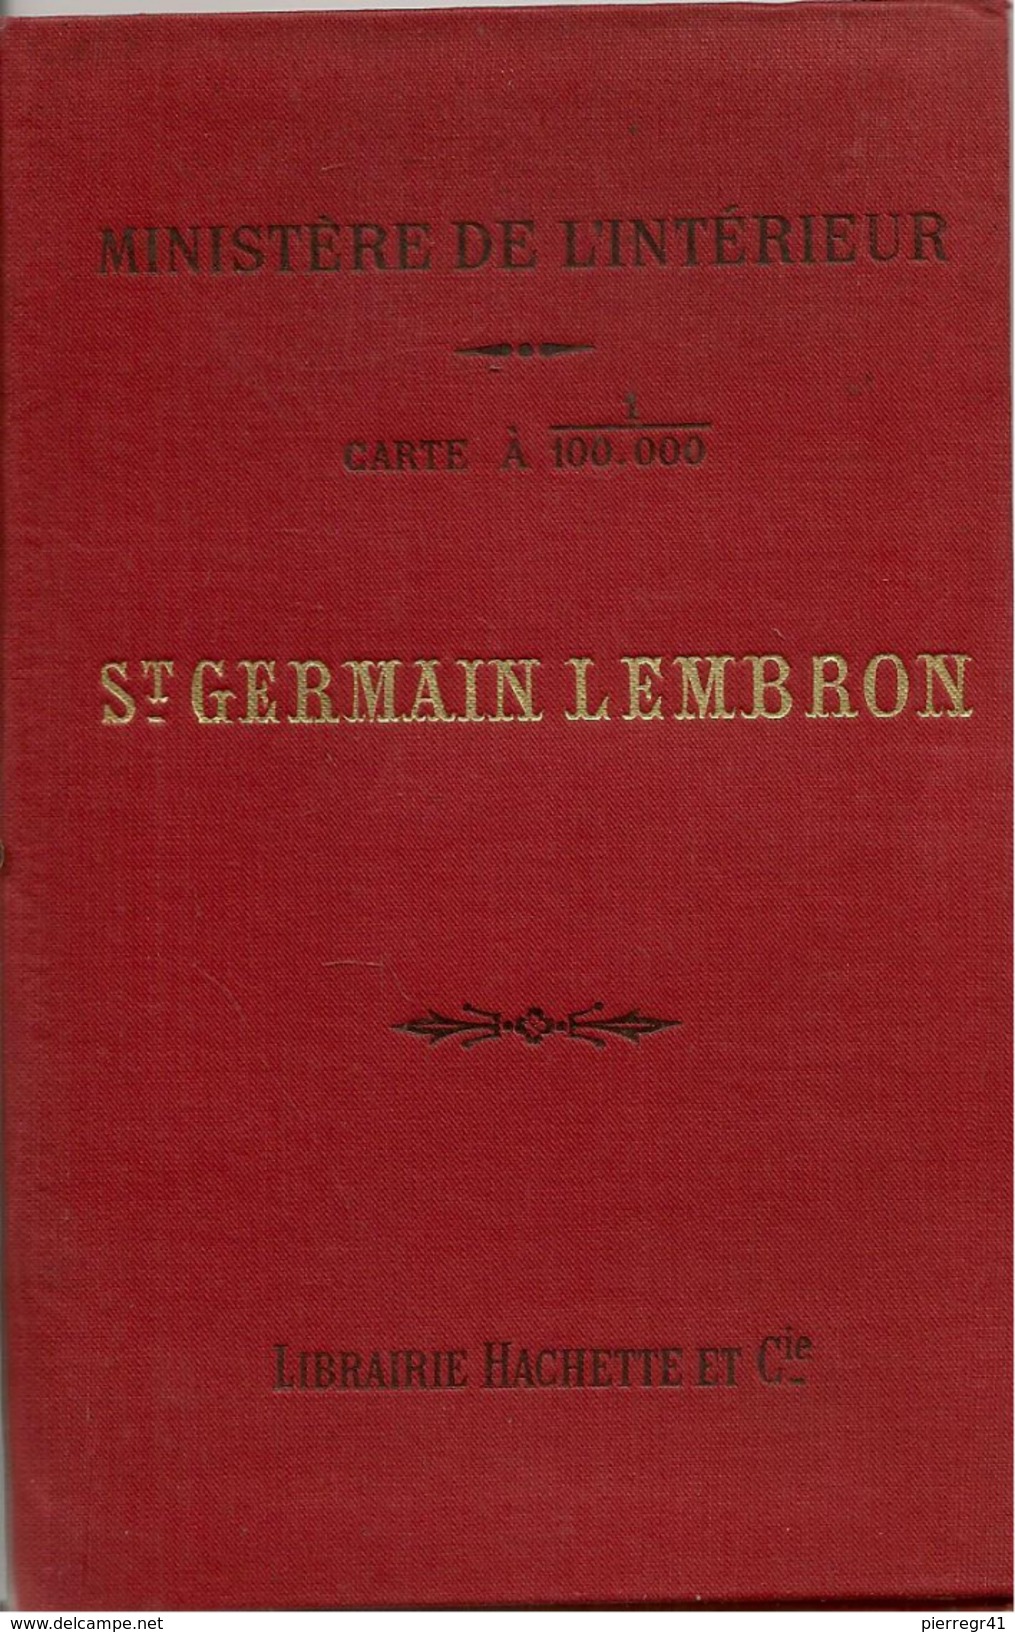 CARTE-MINISTERE DE L INTERIEUR-190915/63/ -SERVICE VICINAL-ST GERMAIN LEMBROM-Dept 15/63/43-47x56cm-COMME NEUF-TBE - Roadmaps